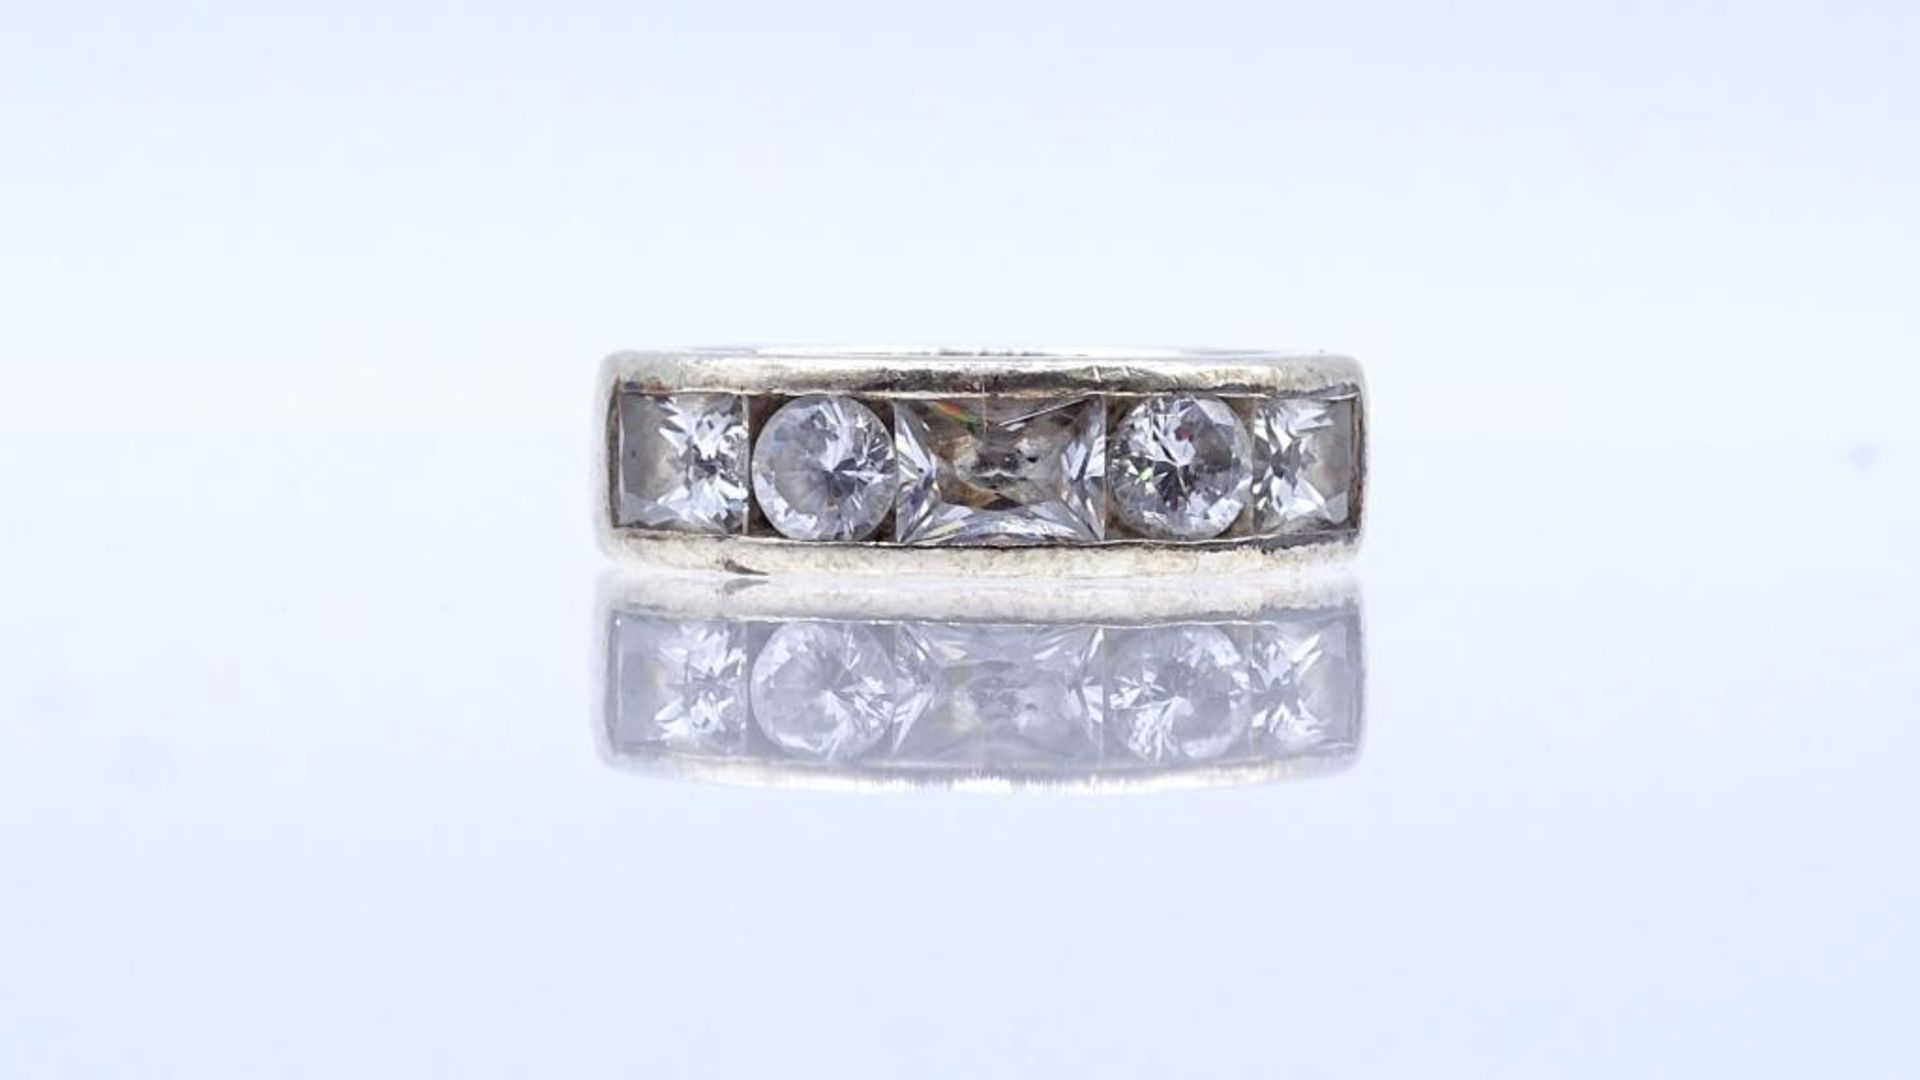 "Esprit", Silber Ring mit Zirkonia, Silber 925/000, 9,1gr., RG 53- - -22.61 % buyer's premium on the